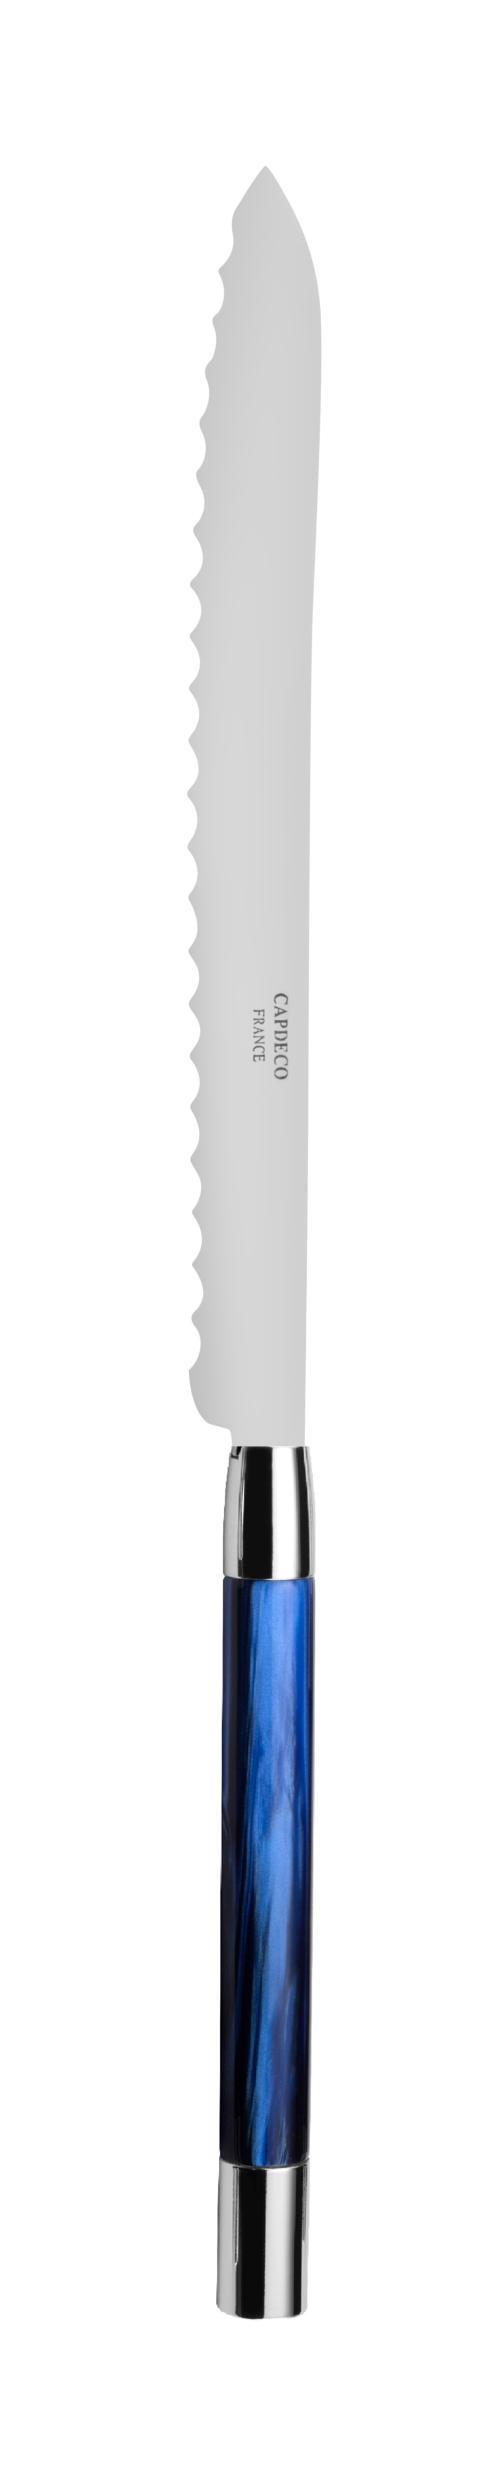 $75.00 Bread knife